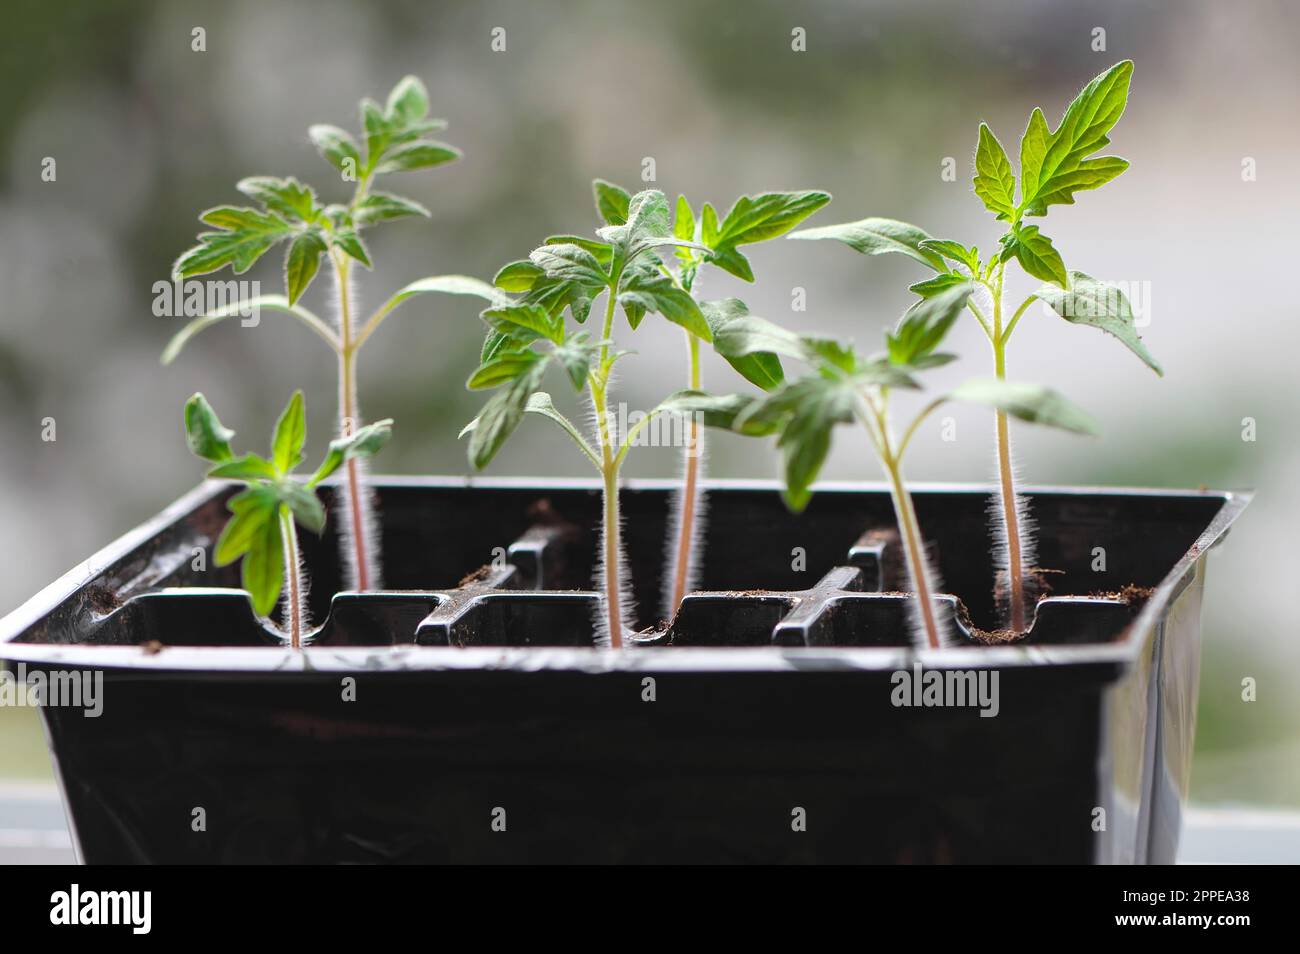 Solanum lycopersicum - piantine di pomodoro in un vassoio di sei confezioni che crescono su un davanzale - coltivate in casa - piantine vegetali. British Columbia, Canada. Foto Stock